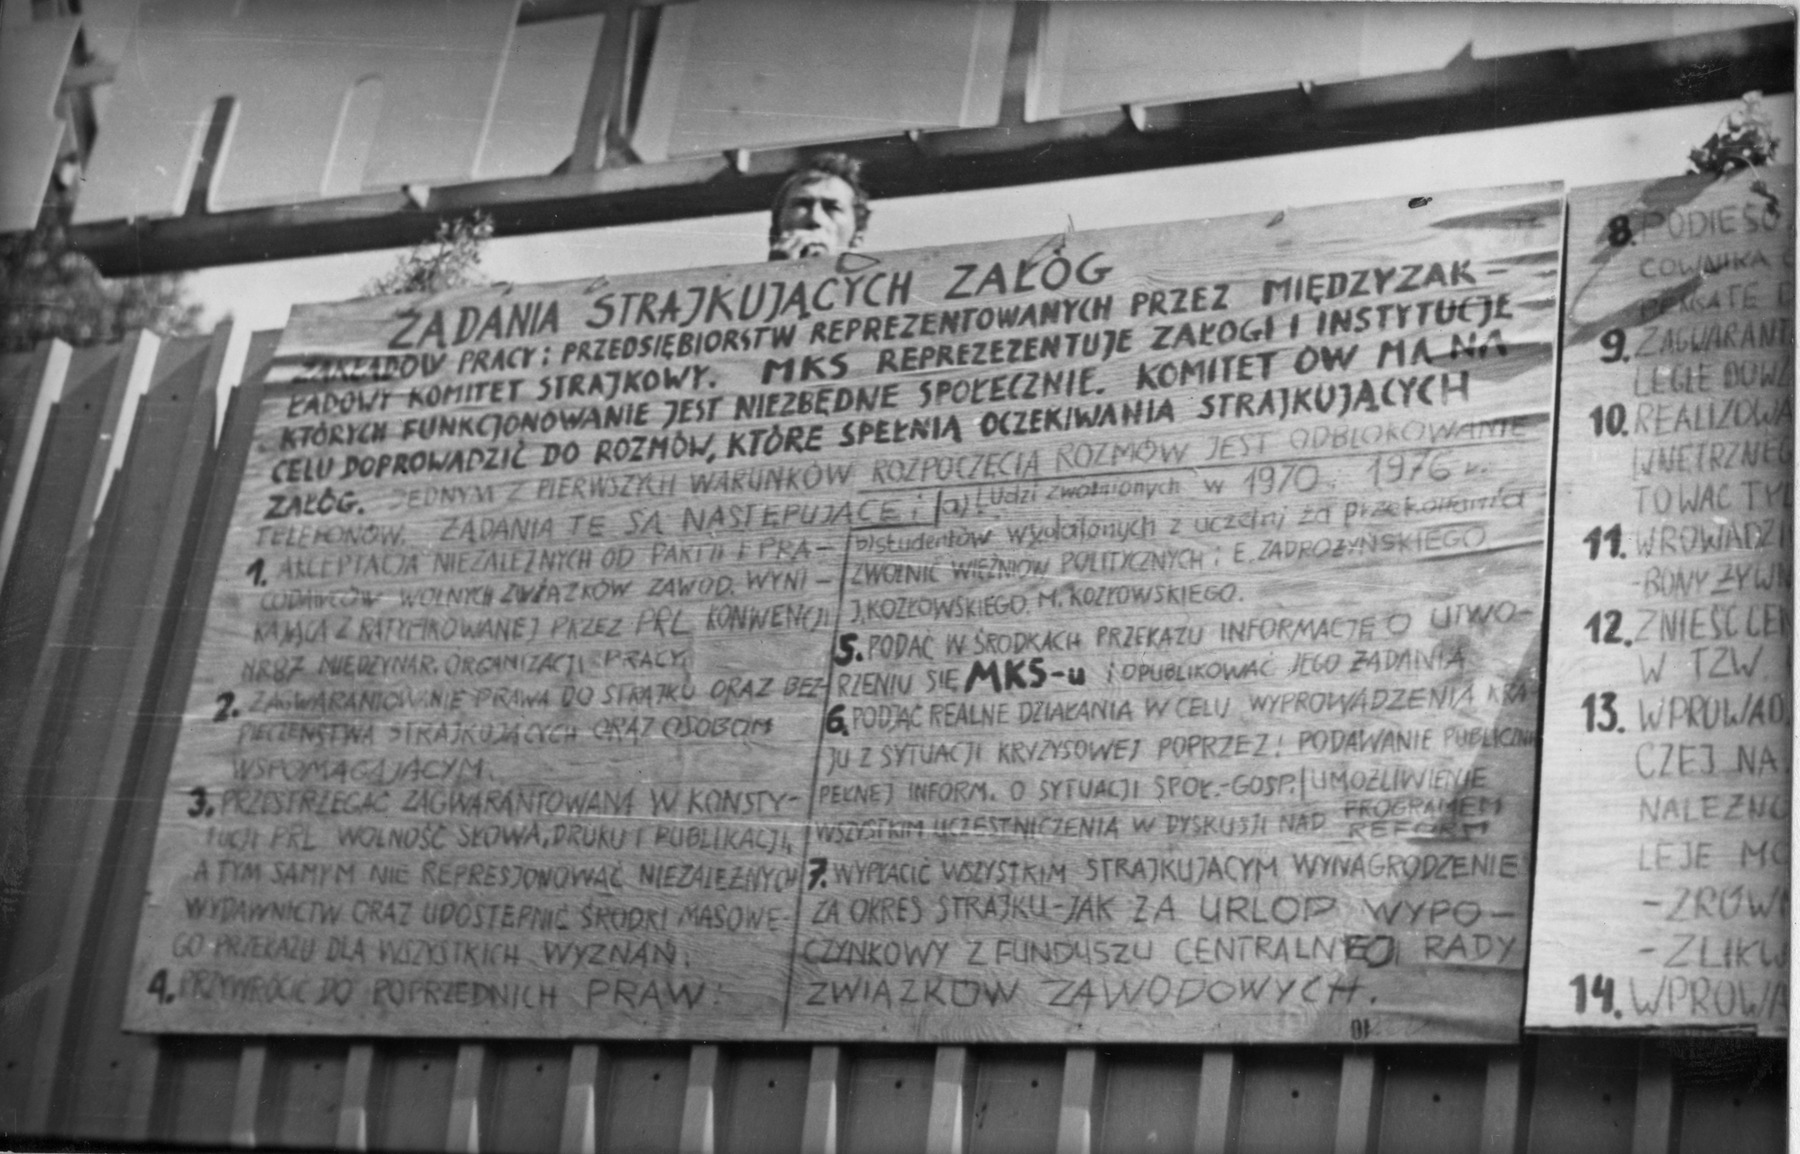 Postulaty strajkowe przyczepione do bramy Stoczni Gdańskiej (z zasobów Archiwum IPN)